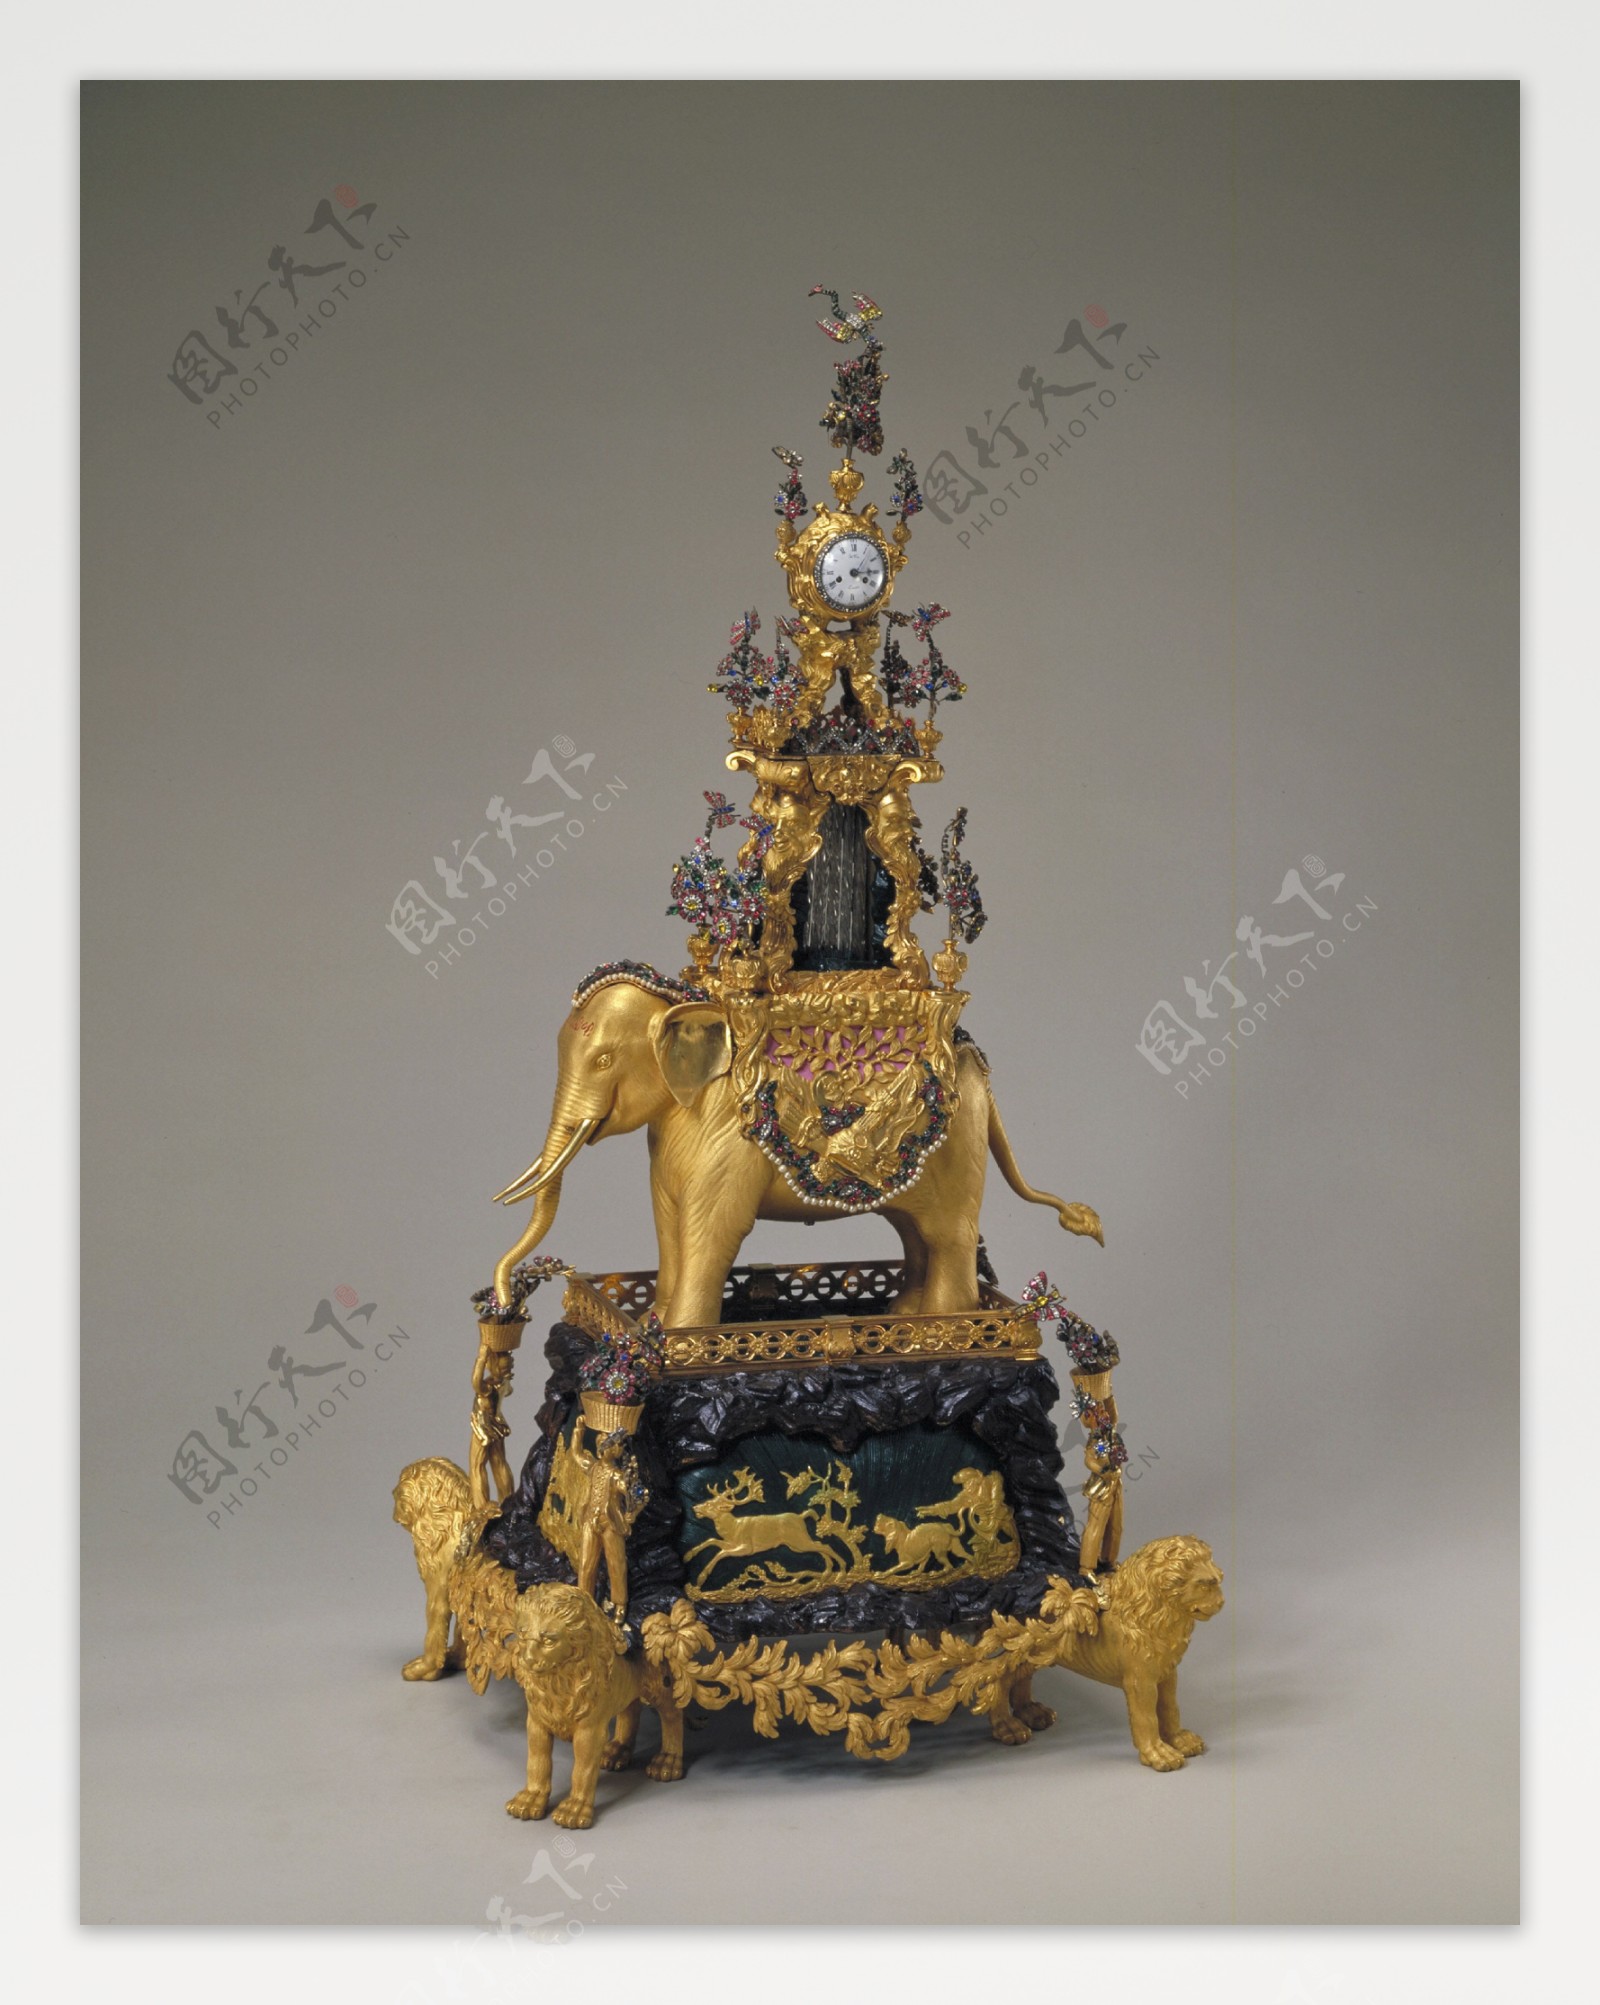 国宝器物清末铜镀金四狮架象驮表故宫博物院藏图片